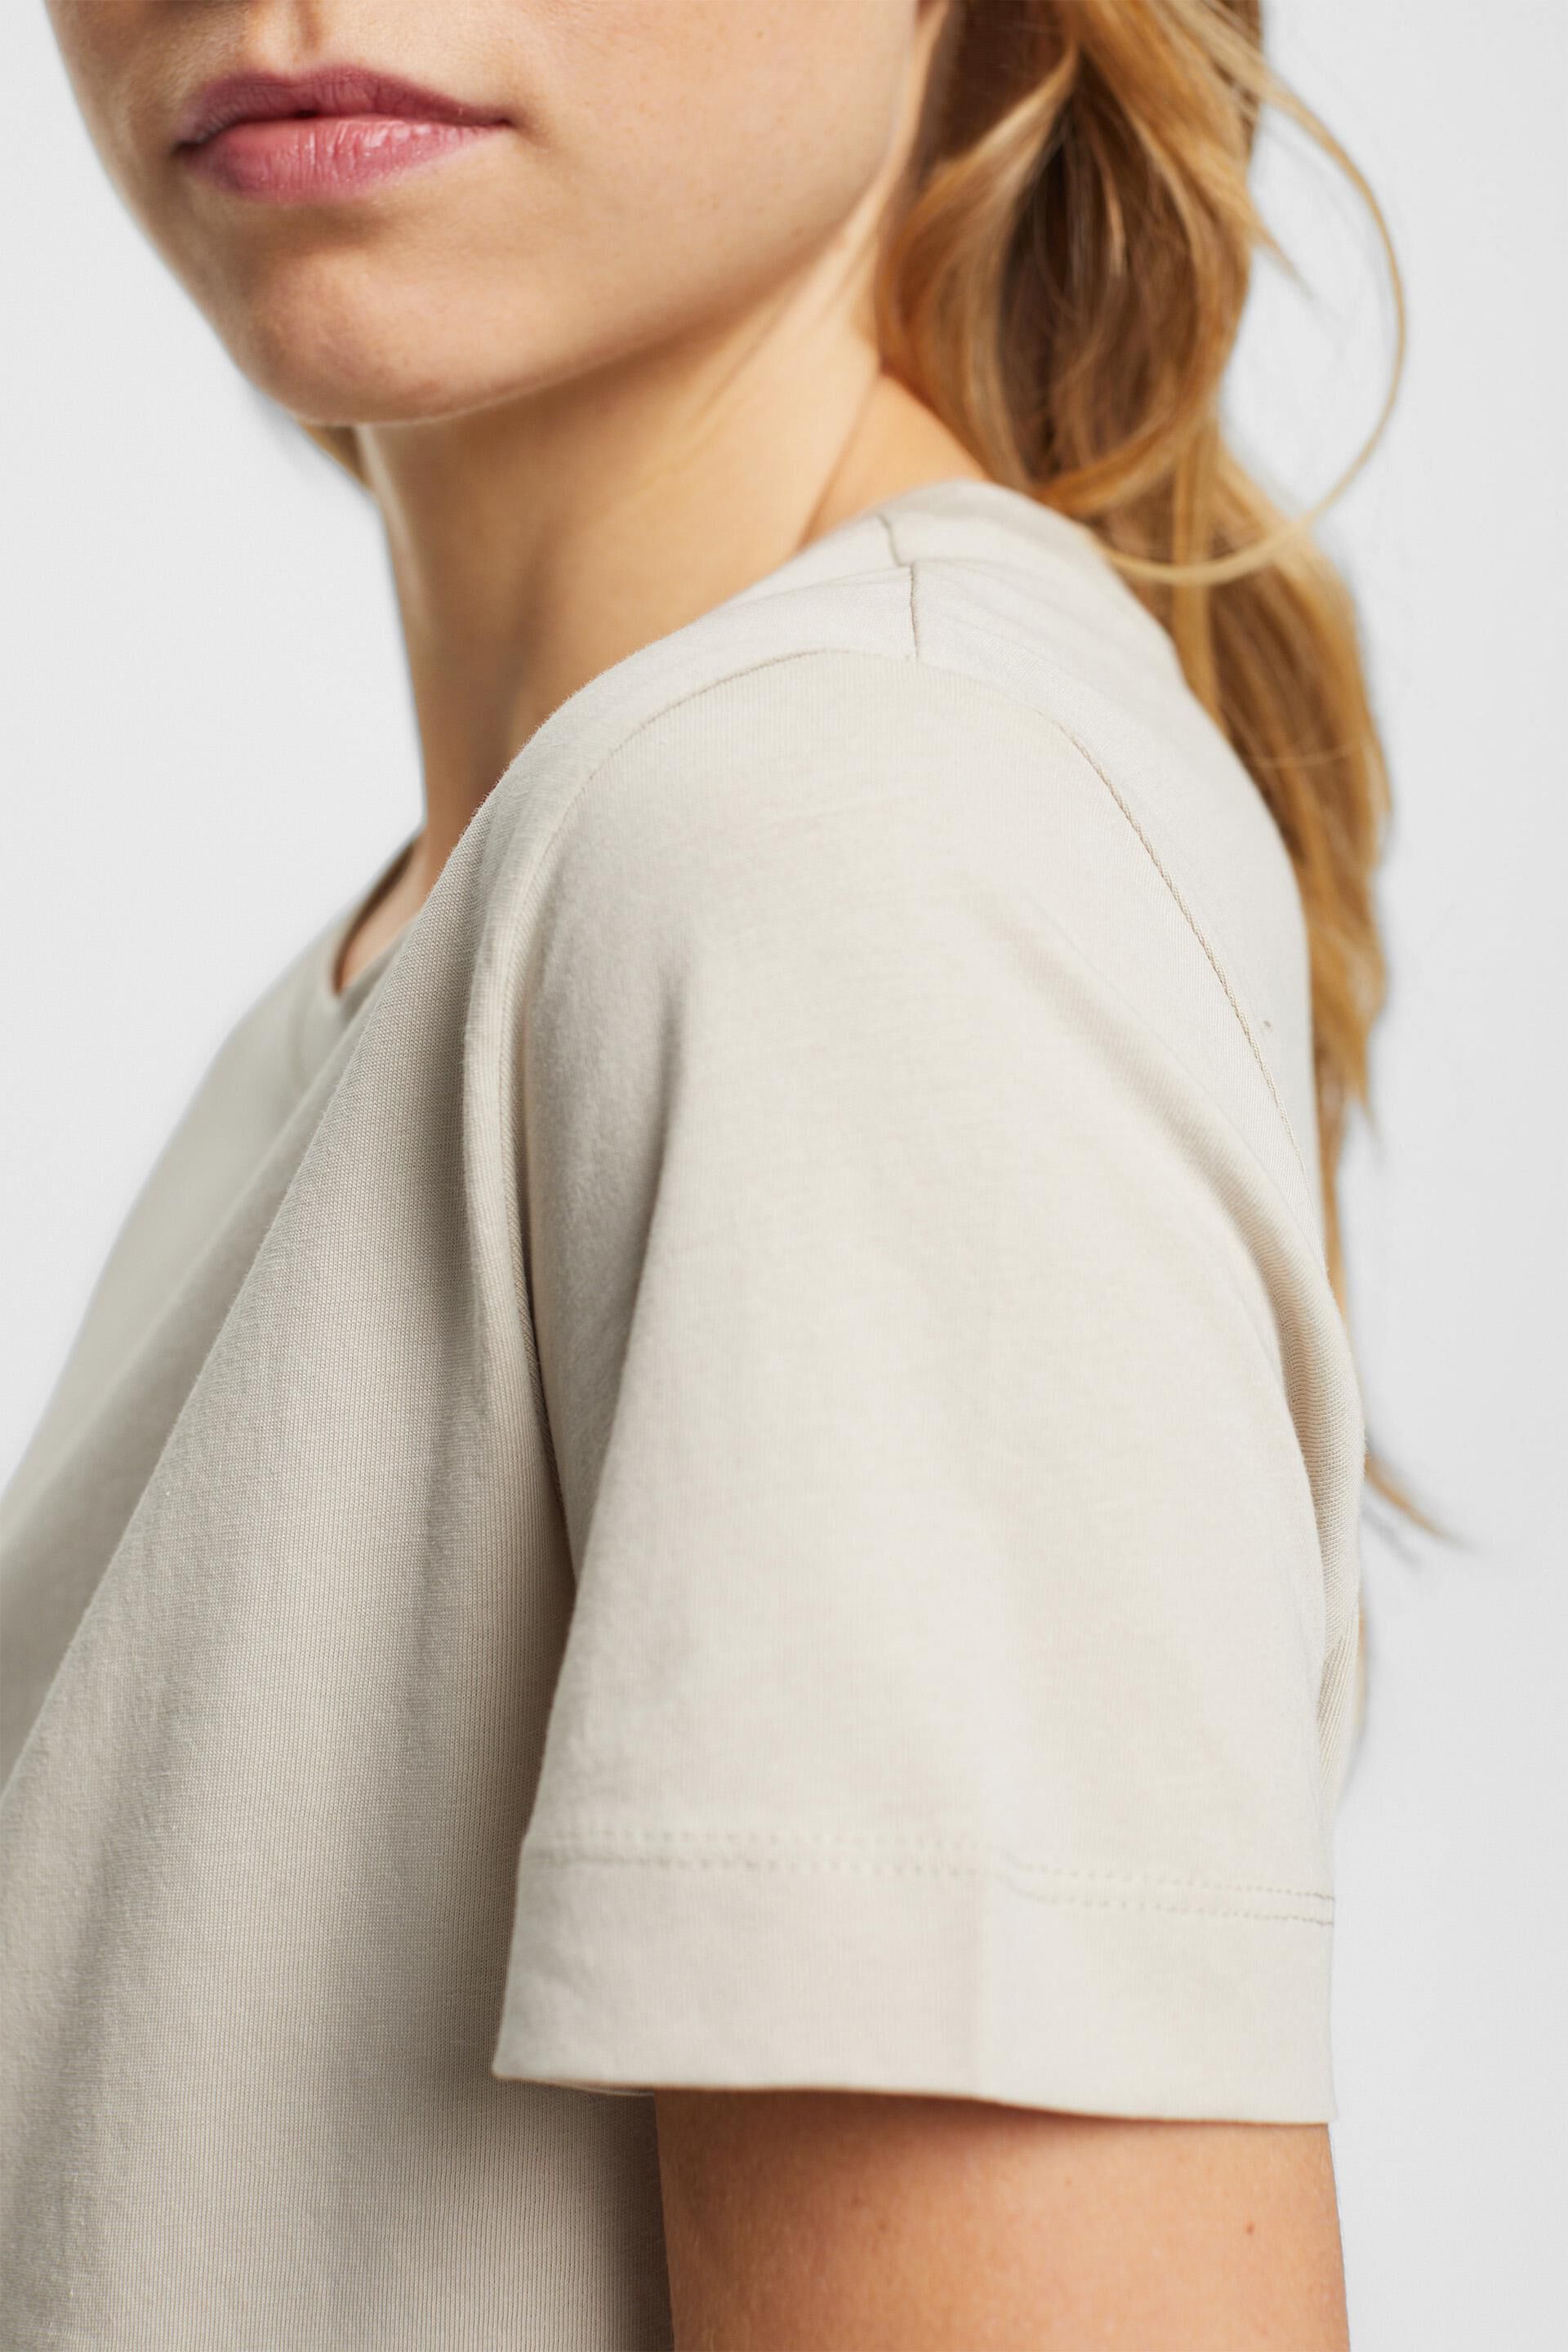 Esprit Baumwolle mit Rundhalsausschnitt T-Shirt aus